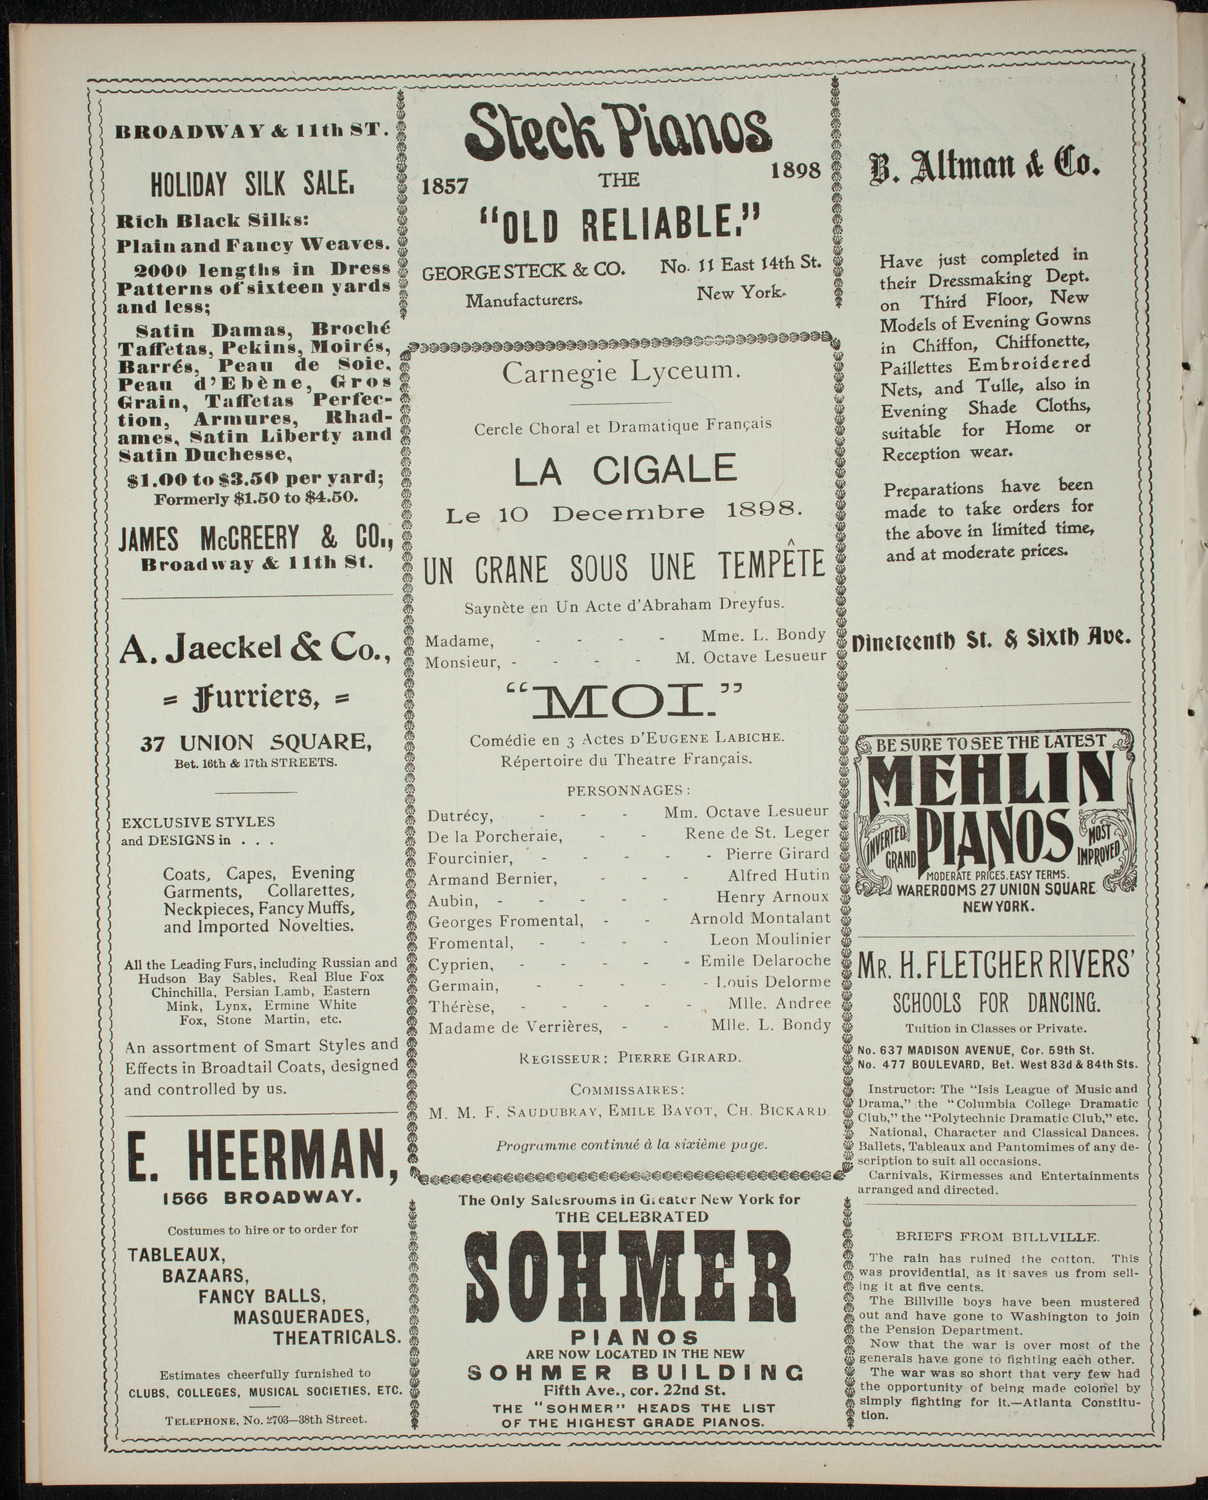 Cercle Choral et Dramatique Francais "La Cigale", December 10, 1898, program page 4